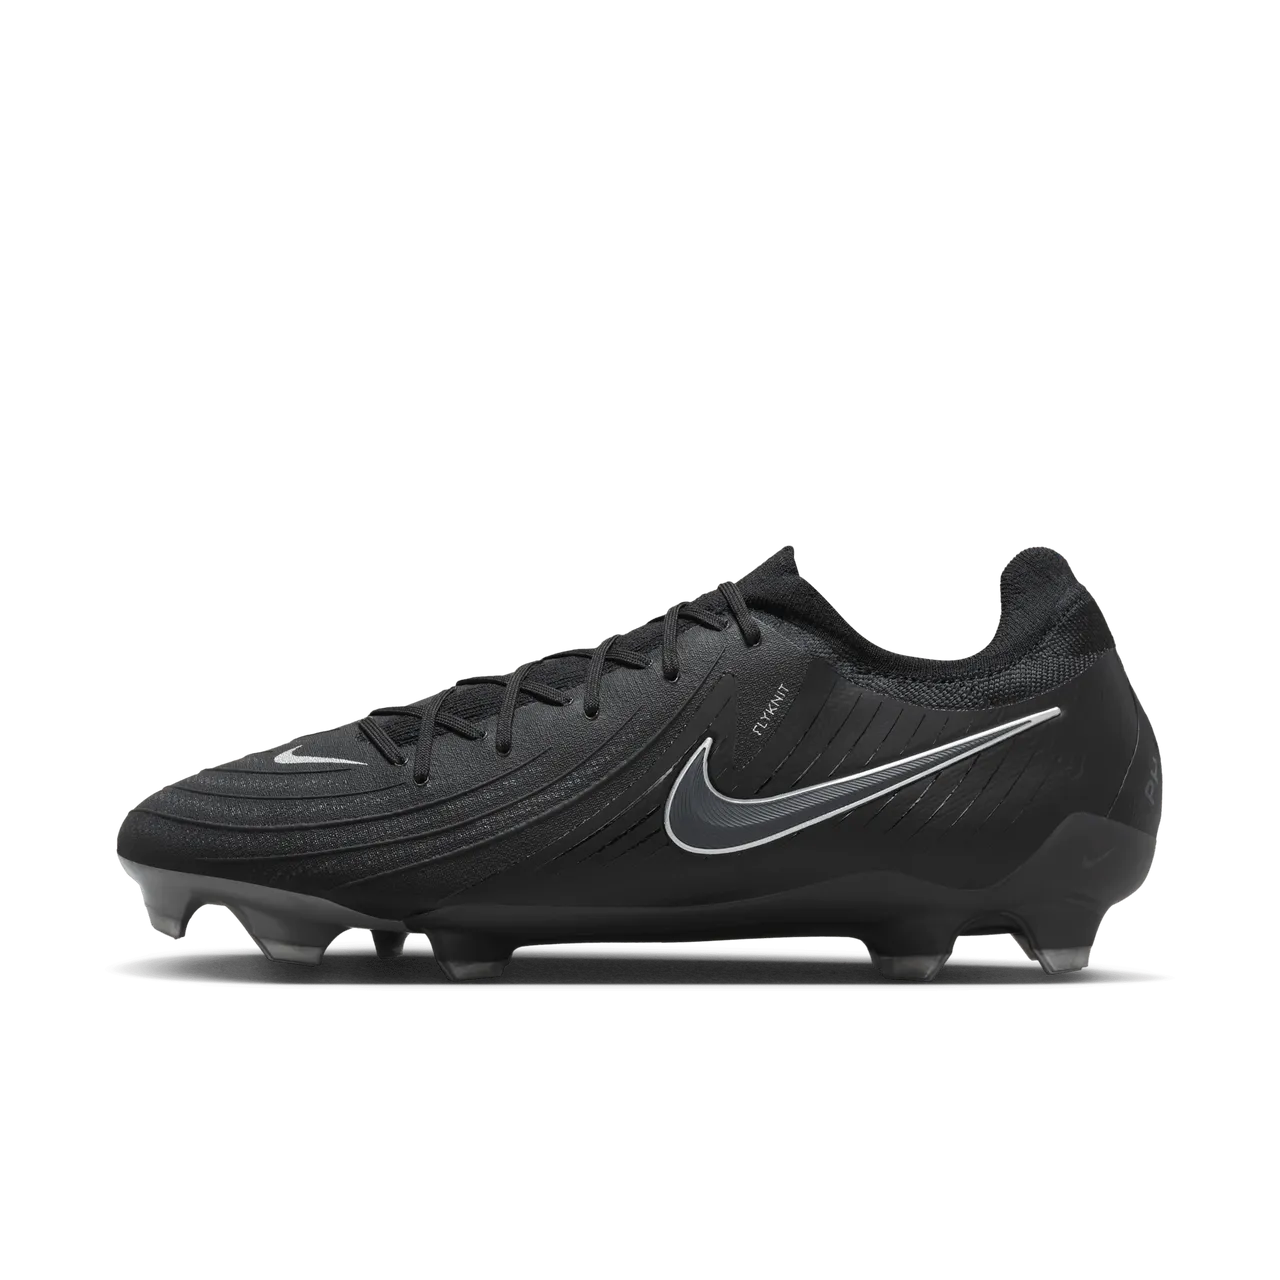 Nike Phantom GX 2 Pro FG Low-Top Football Boot - Black